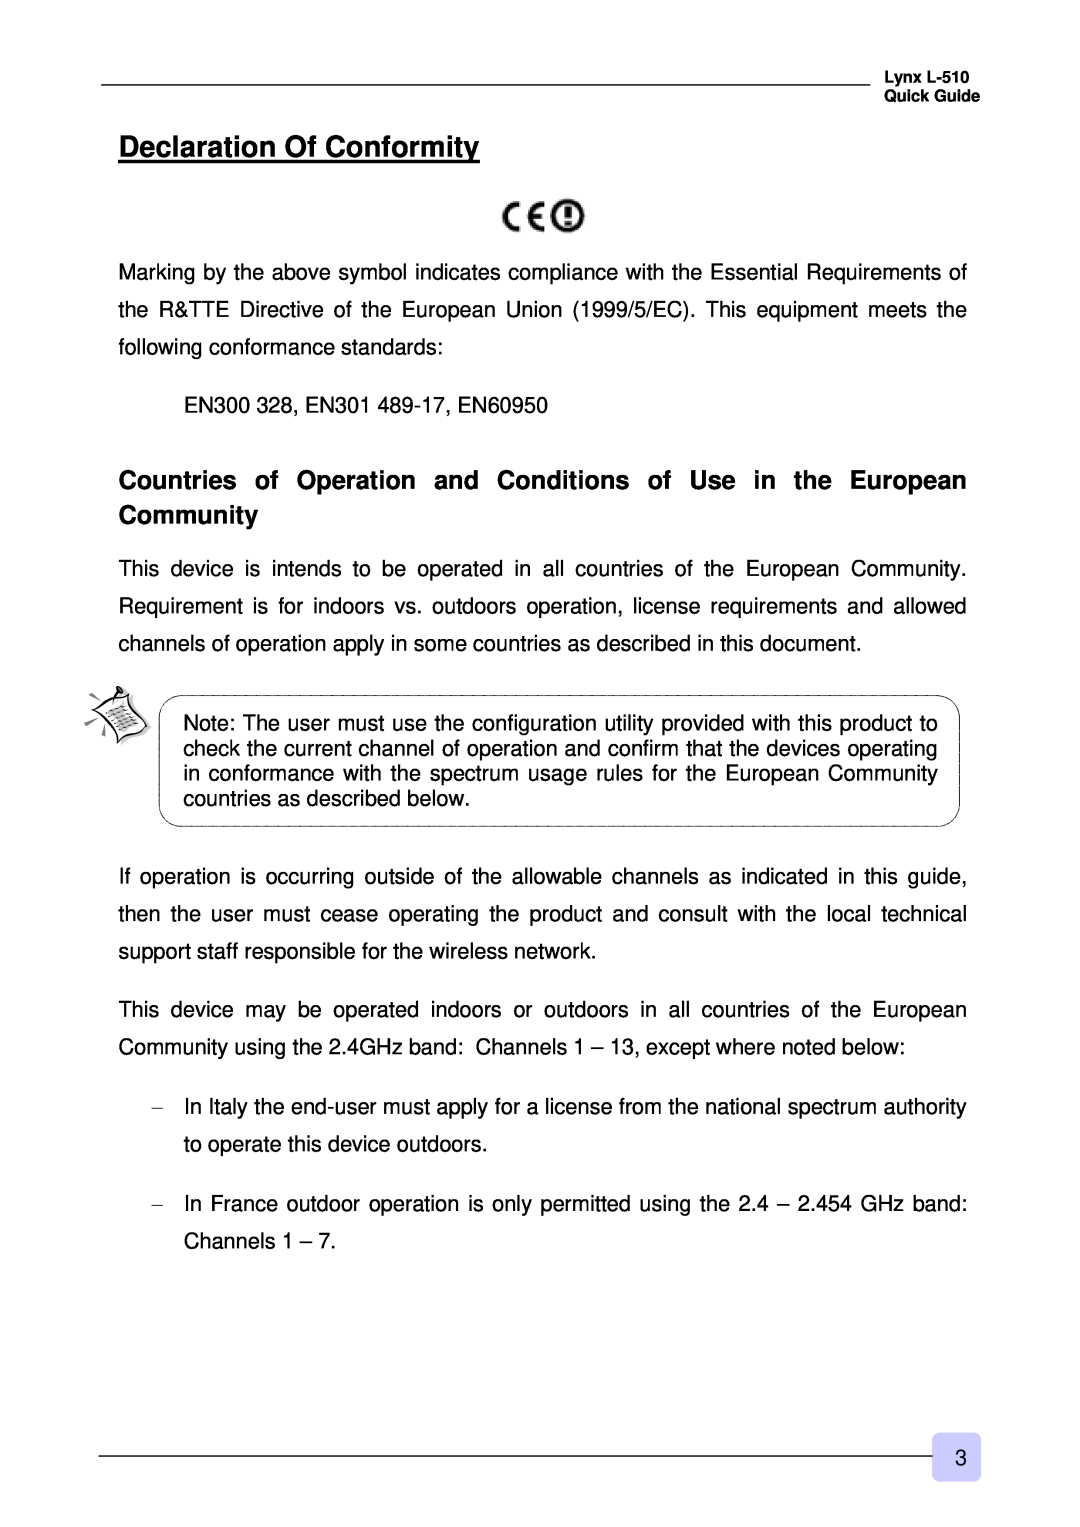 3Com Lynx L-510 warranty Declaration Of Conformity 